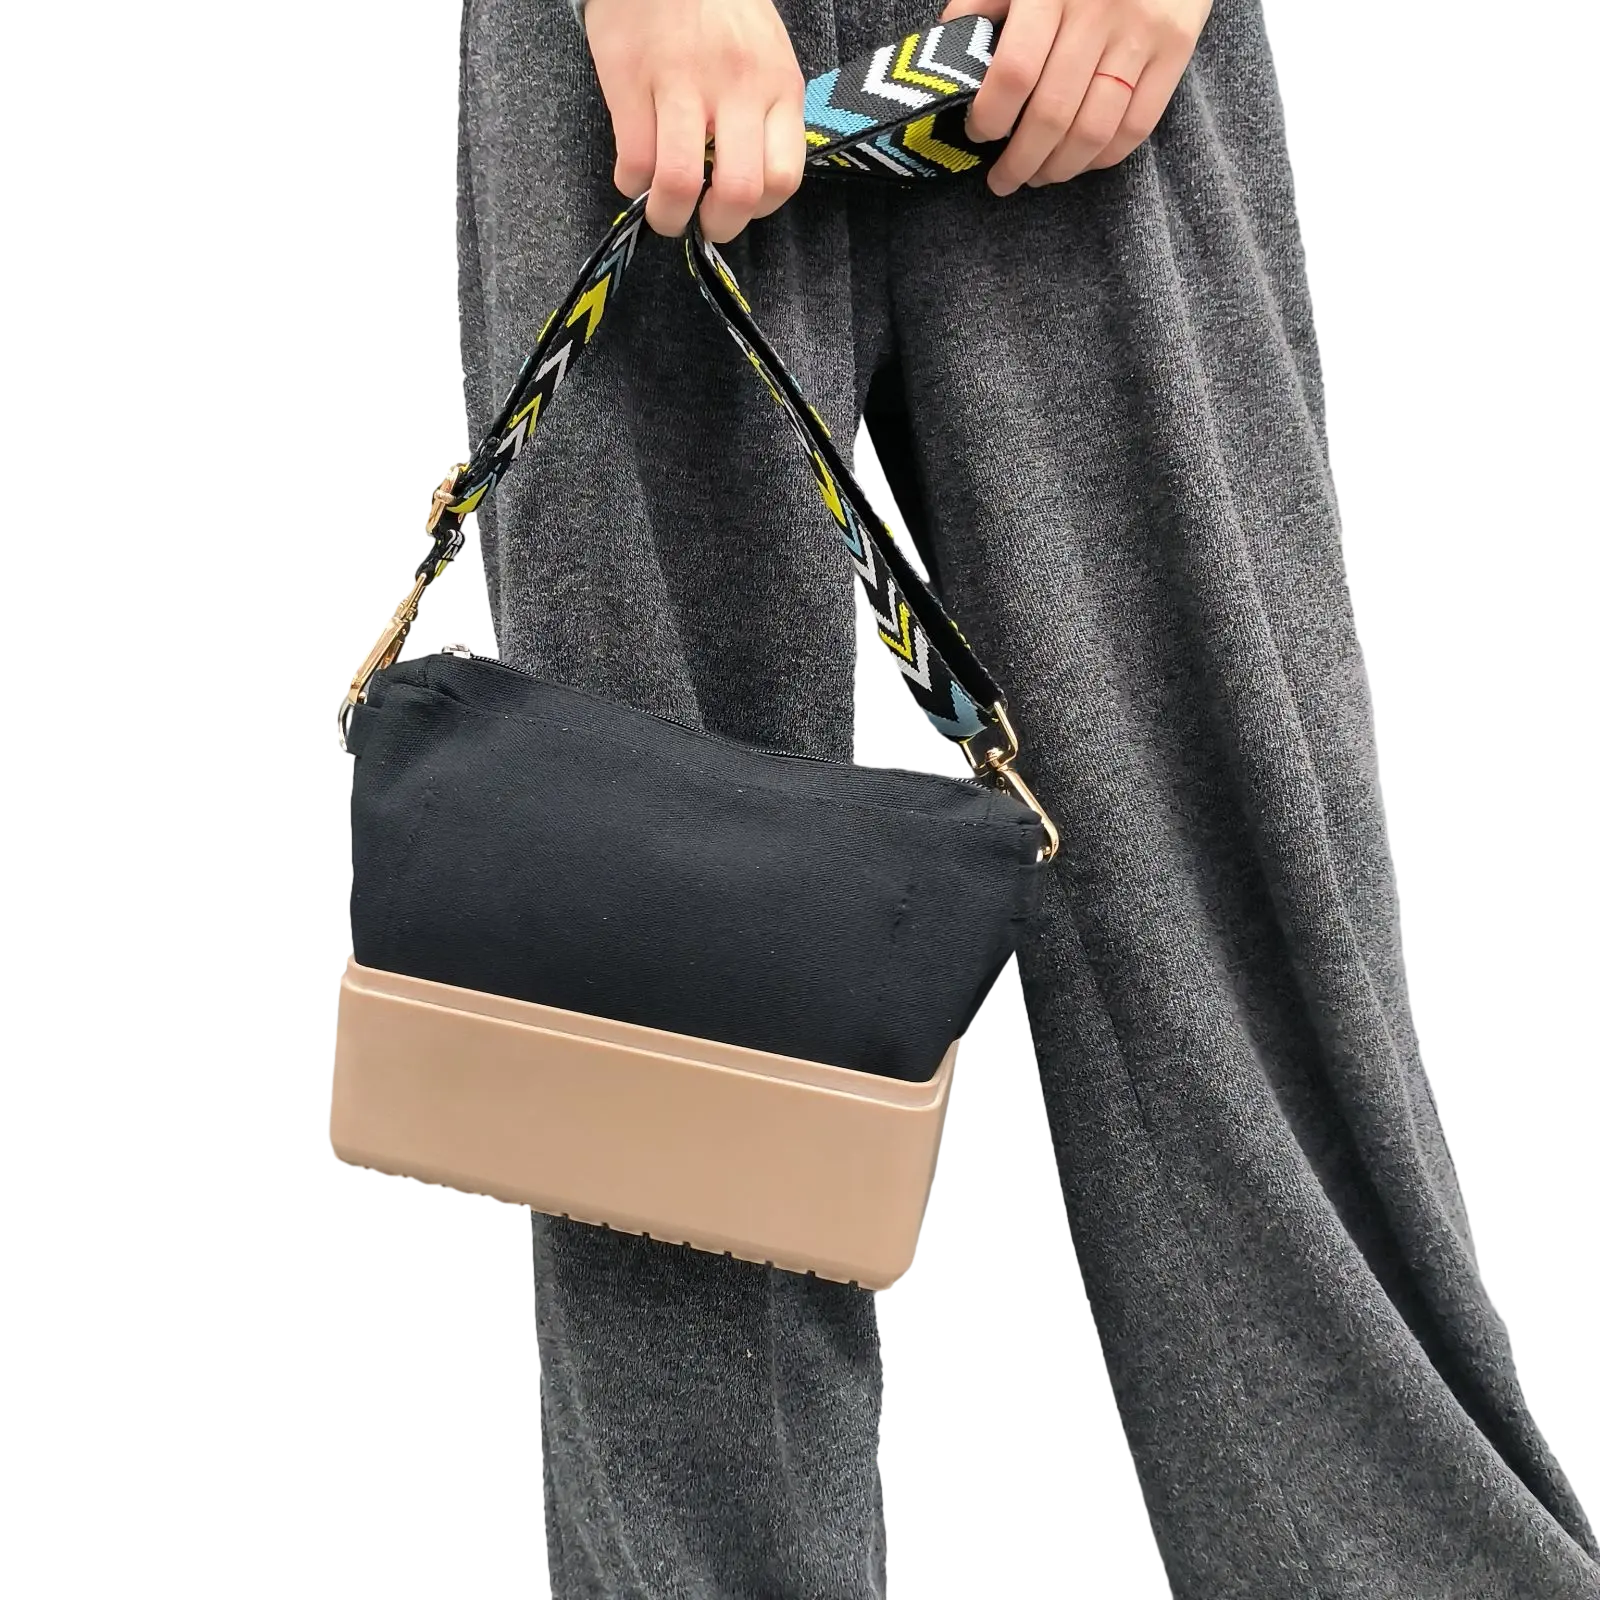 Nuevo modelo de bolsos al por mayor, bolso de mano de mujer barato, bolsos de noche, bolso de mano de mujer de bajo precio, bolsos de mano de diseñador famoso